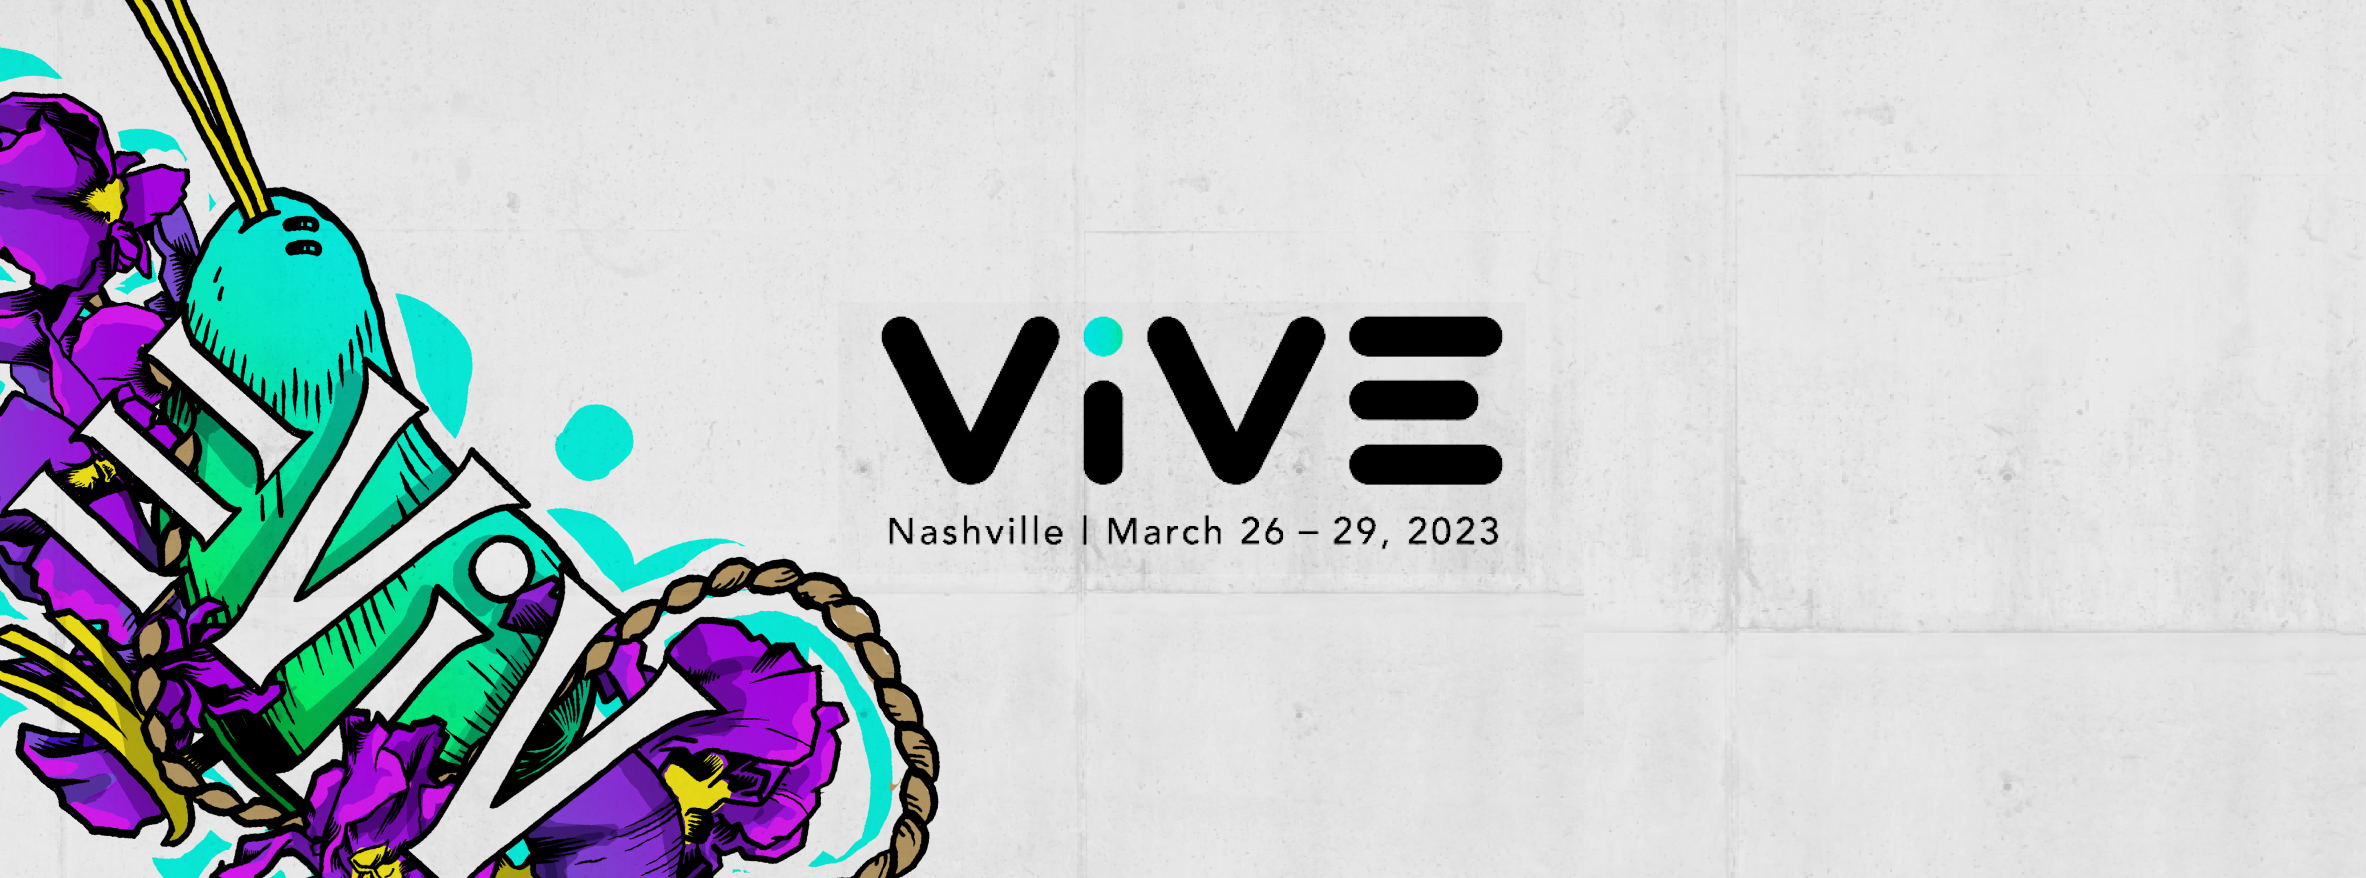 Conference VIVE 2023 Nashville UST